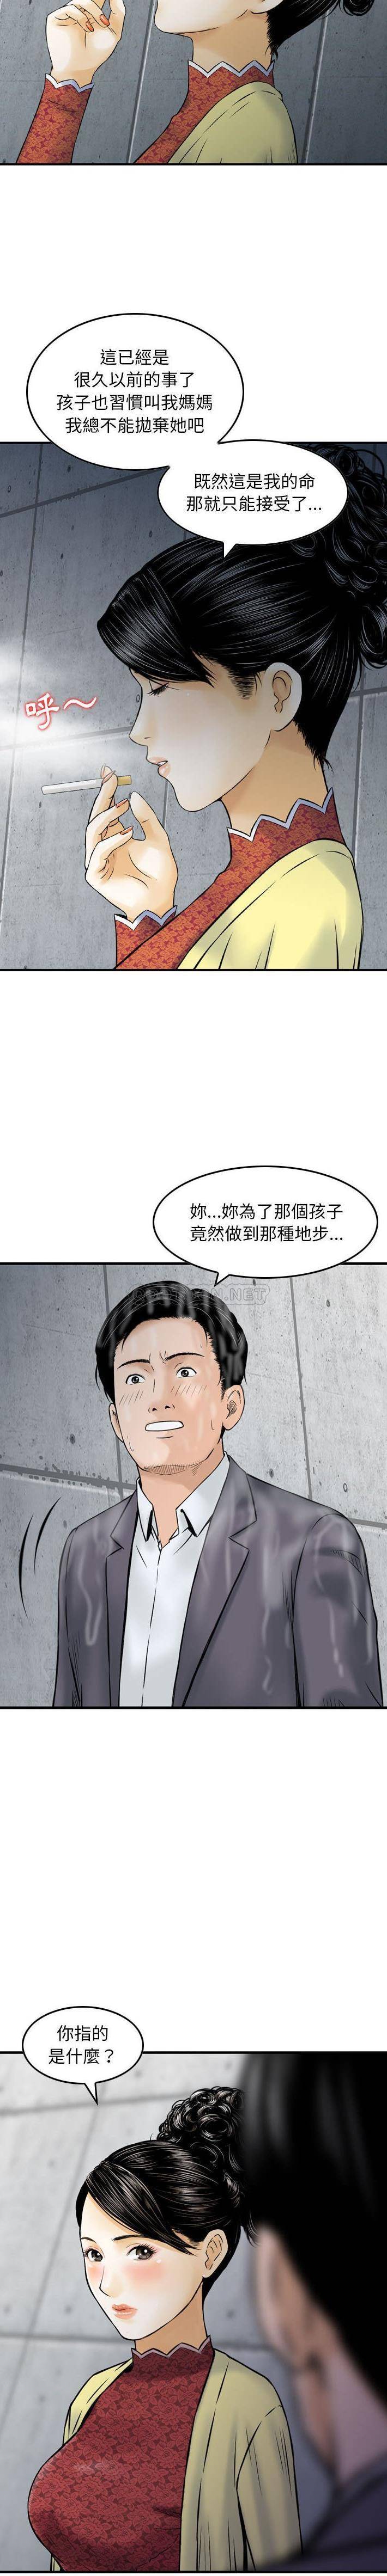 韩国污漫画 金錢的魅力 第15话 12